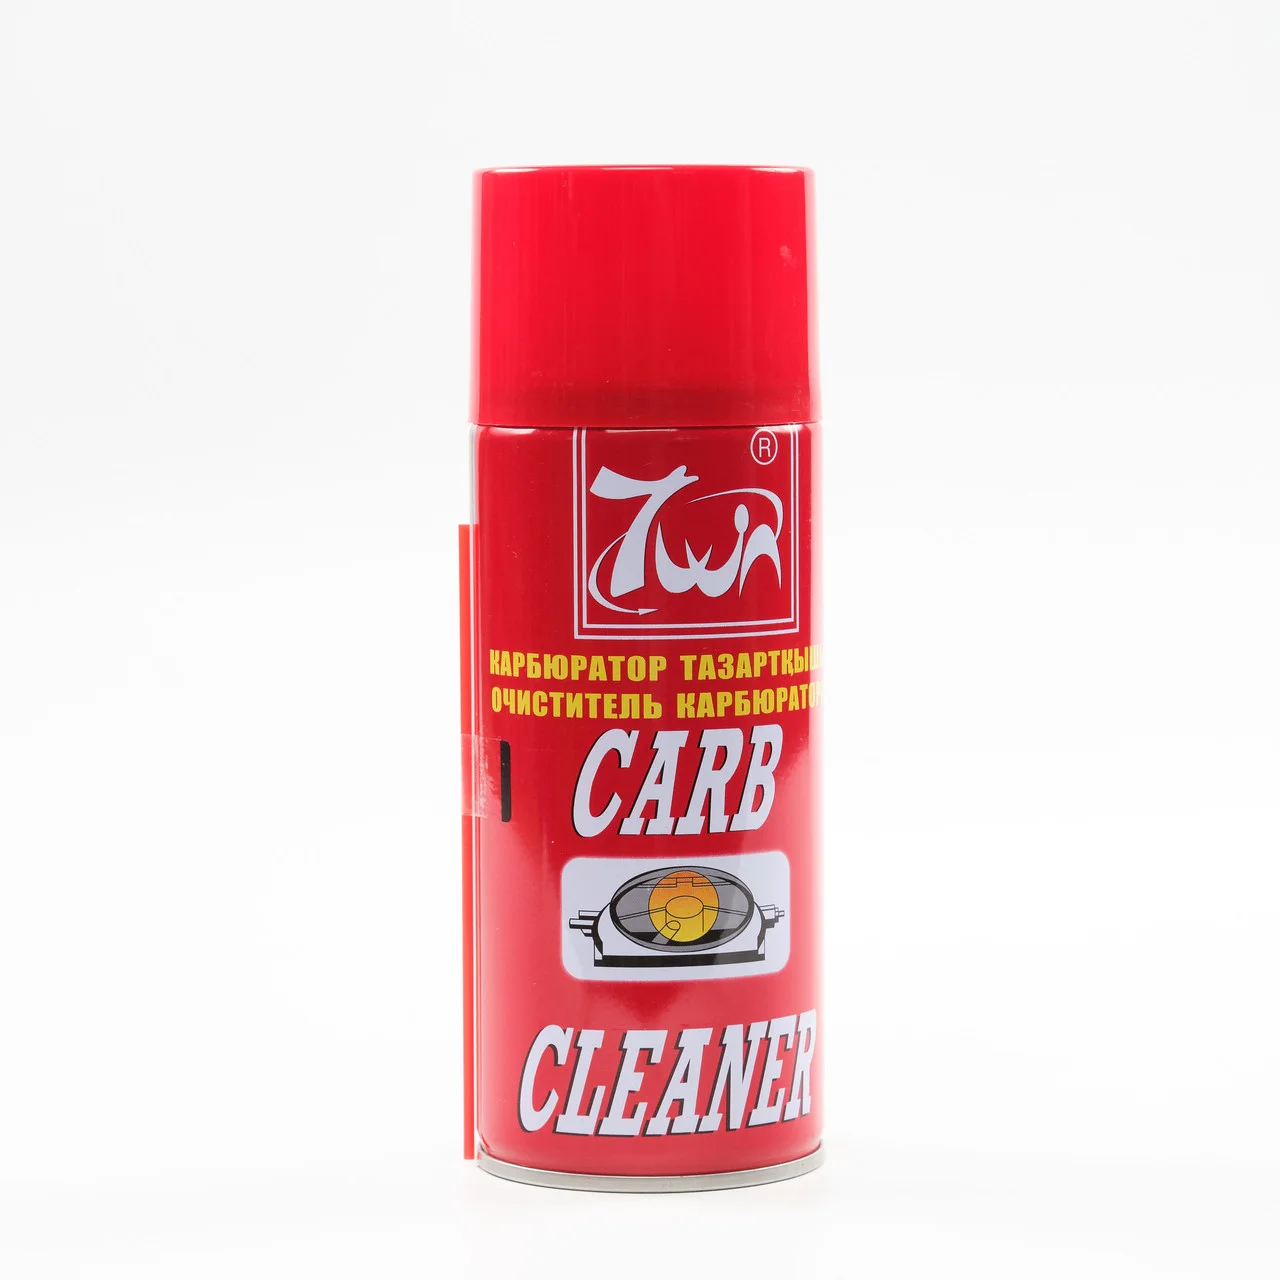 Очиститель карбюратора Carb Cleaner 7win, 450мл, Китай, оригинал